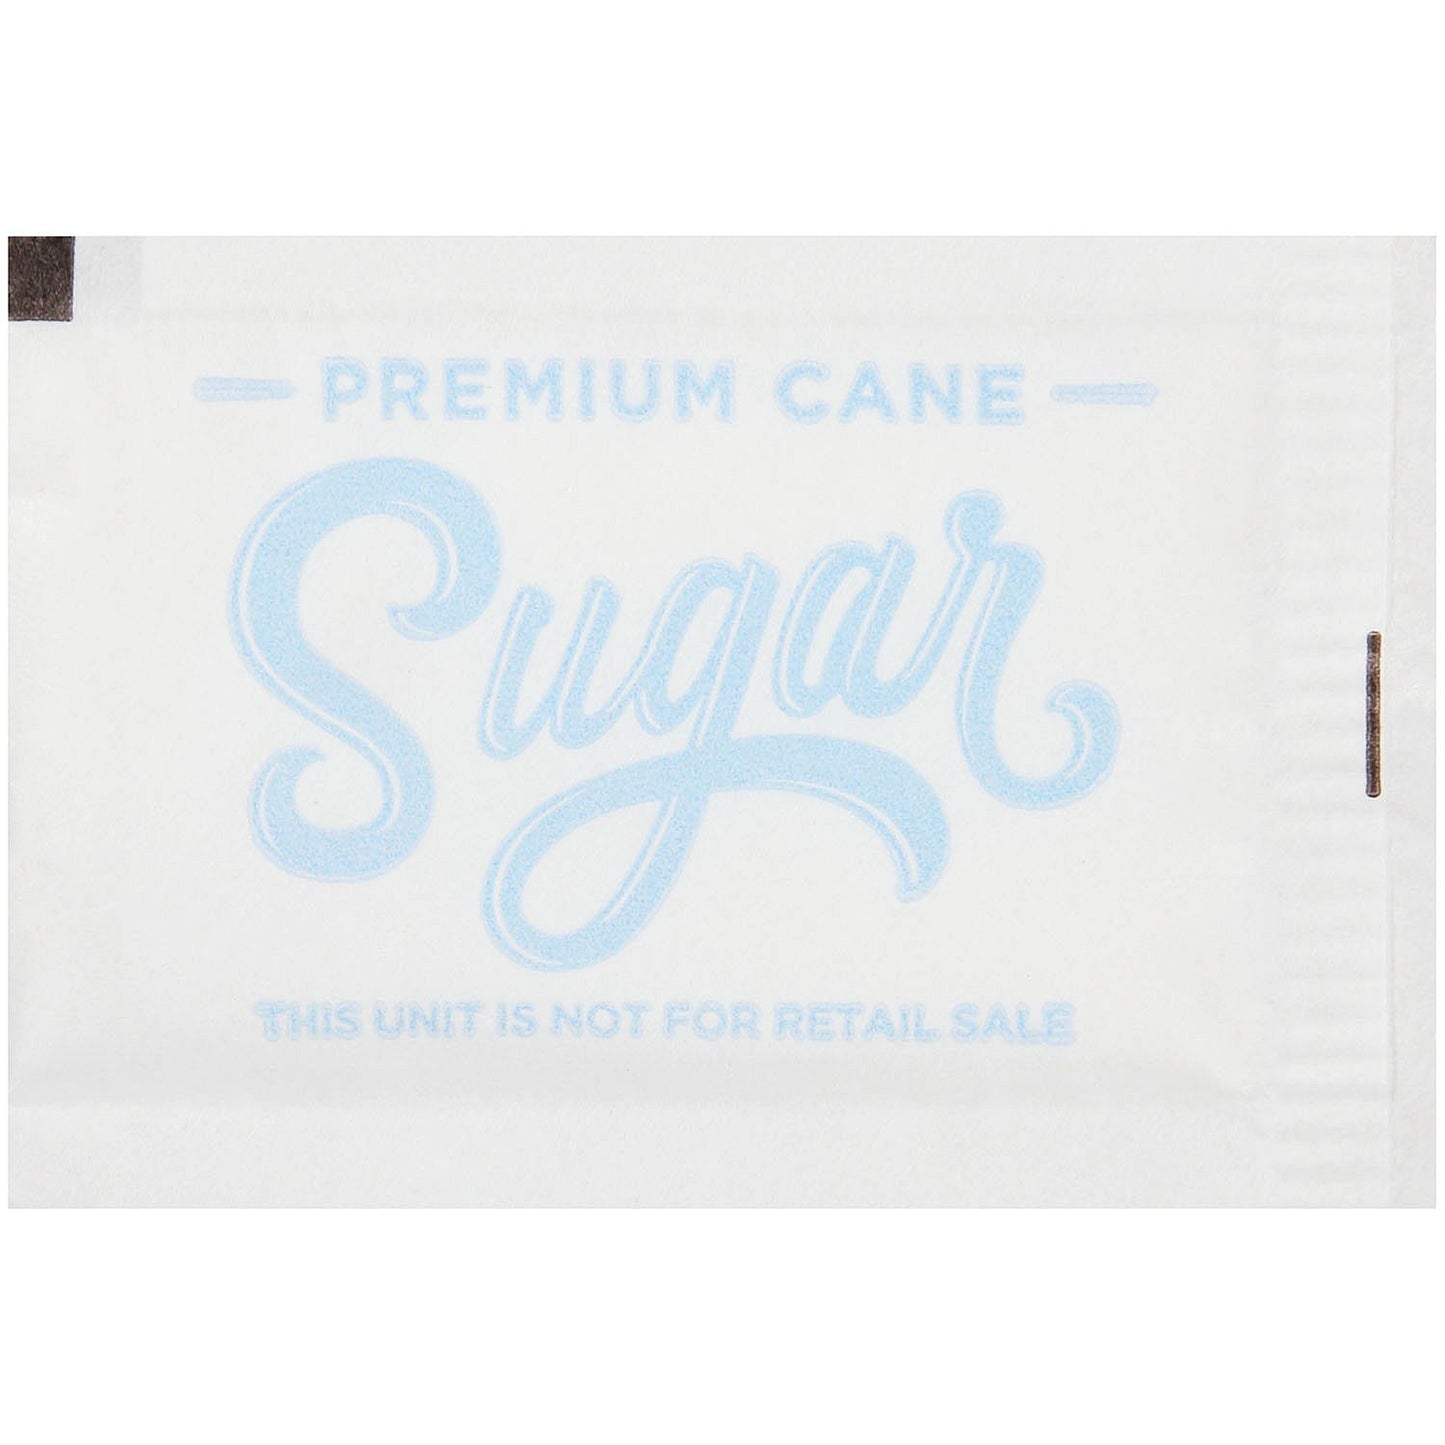 Premium Cane Sugar (2,000 packets, 12.5 lbs.)